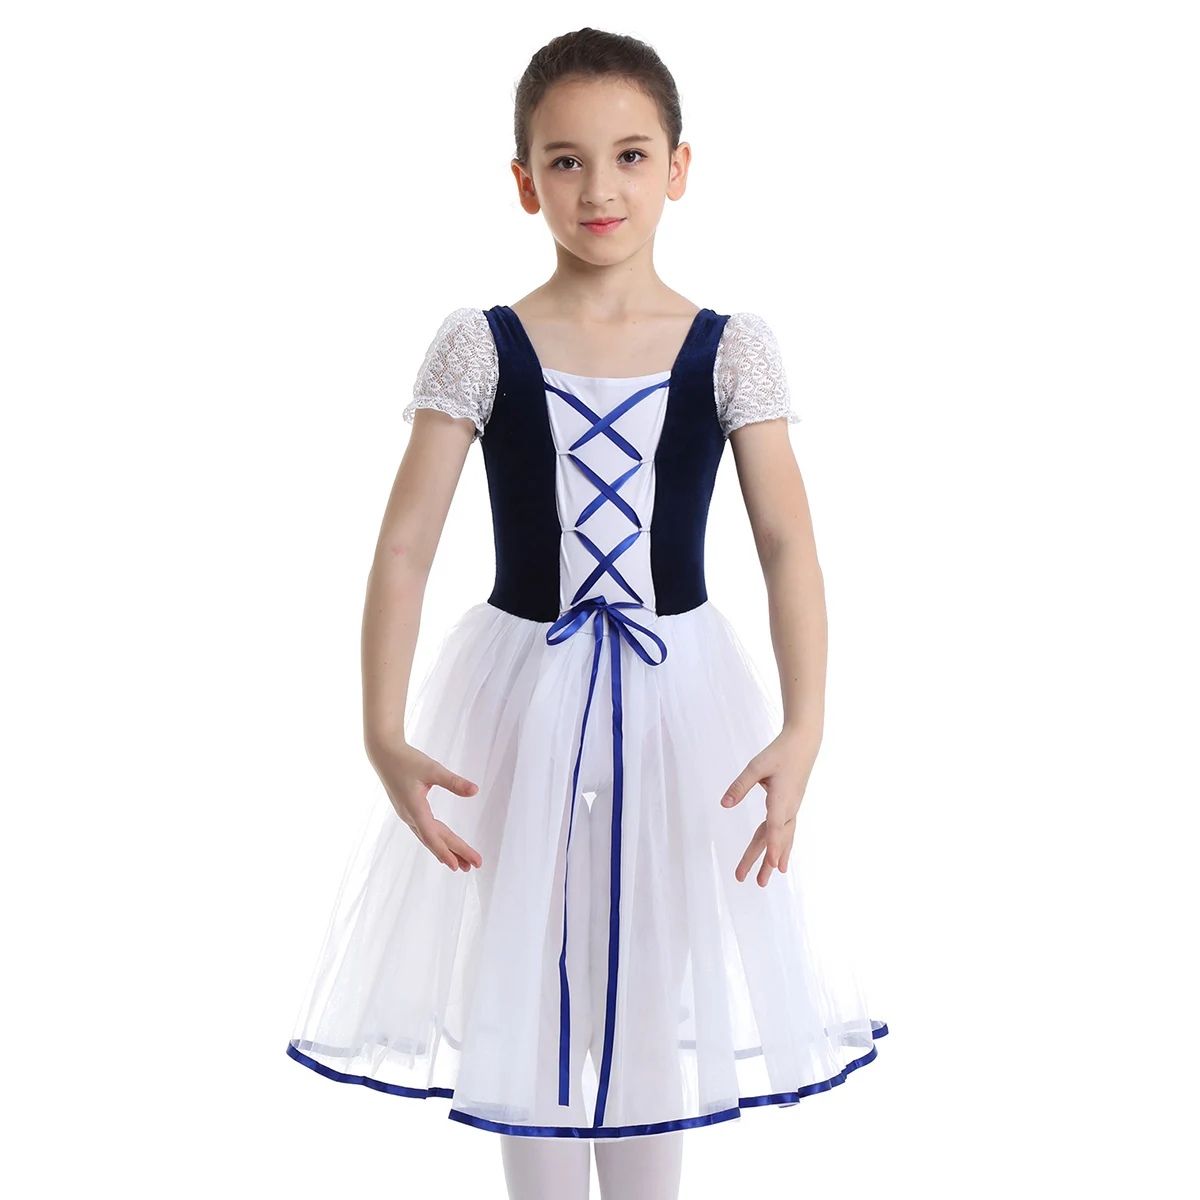 IIXPIN романтическая пачка балетные костюмы Жизель для девочек детское вельветовое длинное фатиновое платье для катания на коньках балерина с короткими рукавами кружевное летнее платье - Цвет: Navy Blue